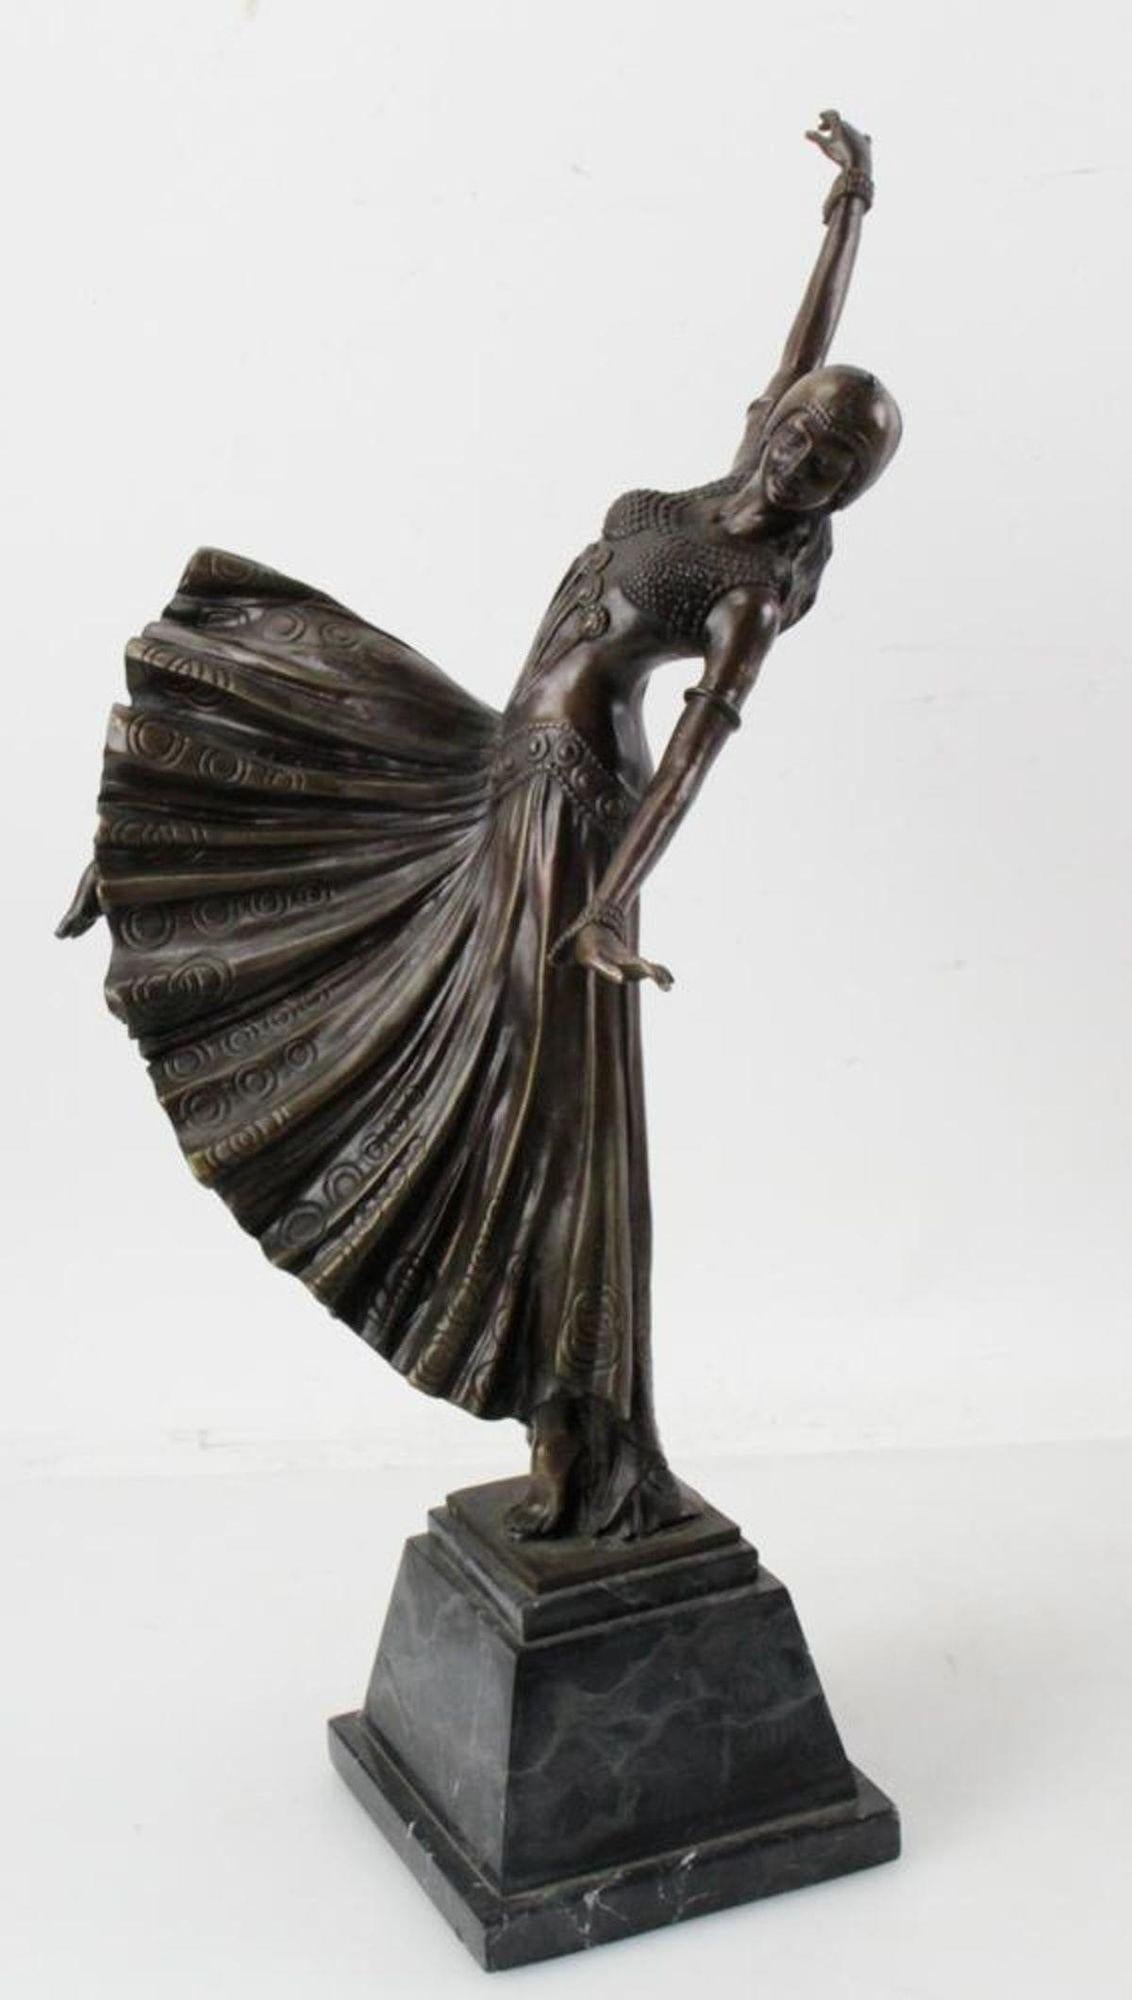 Cette magnifique sculpture Art déco d'une danseuse, réalisée en France pendant la période vibrante de l'Art déco des années 1920, capture une danseuse orientale dans un moment de mouvement fluide et hypnotique. Inspirée par le légendaire artiste